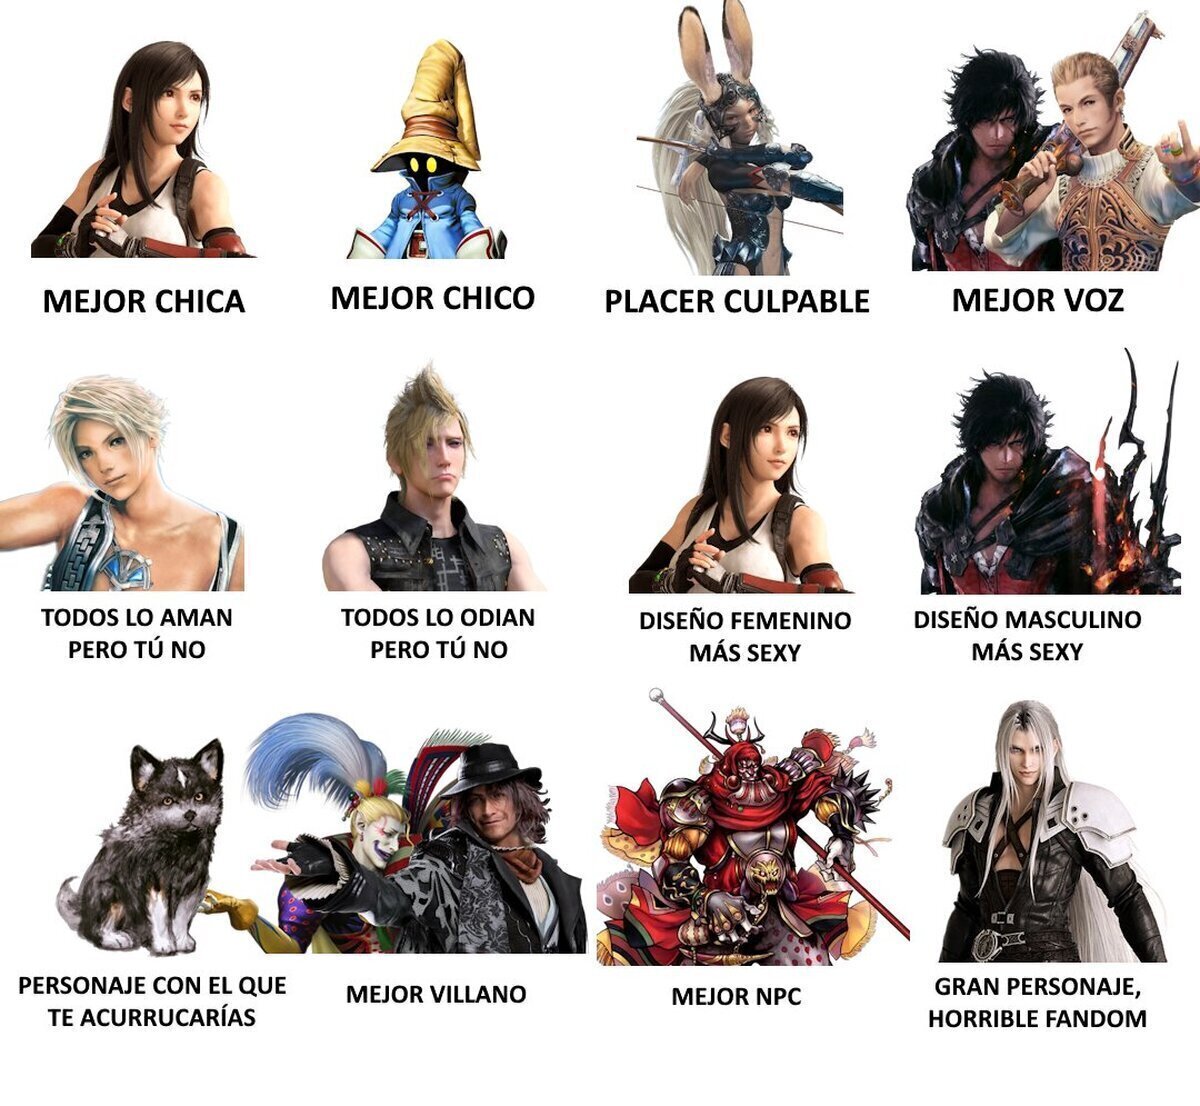 He visto la idea de @RABtoons sobre los mejores personajes de Final Fantasy y he traducido la planti